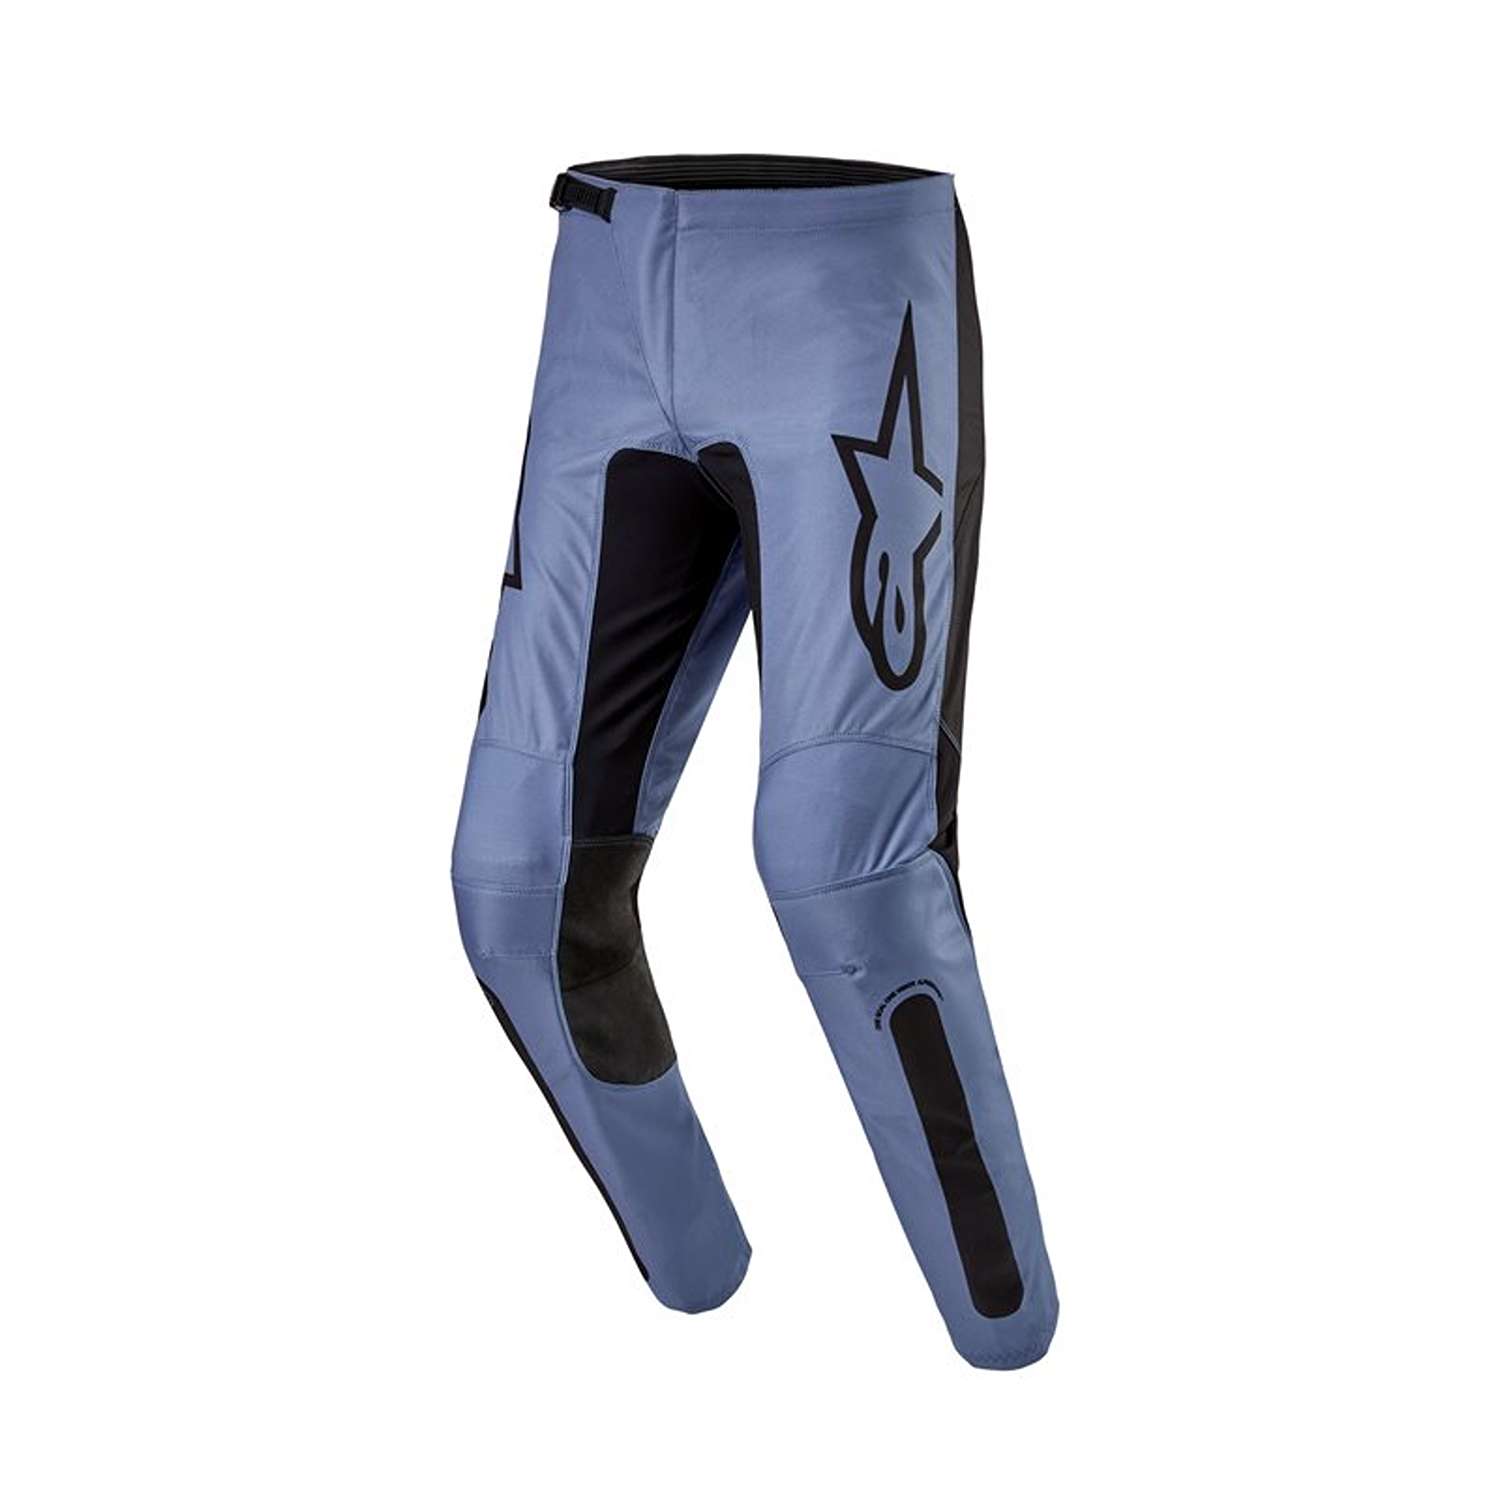 Image of Alpinestars Fluid Lurv Pants Light Blue Black Size 28 ID 8059347265209